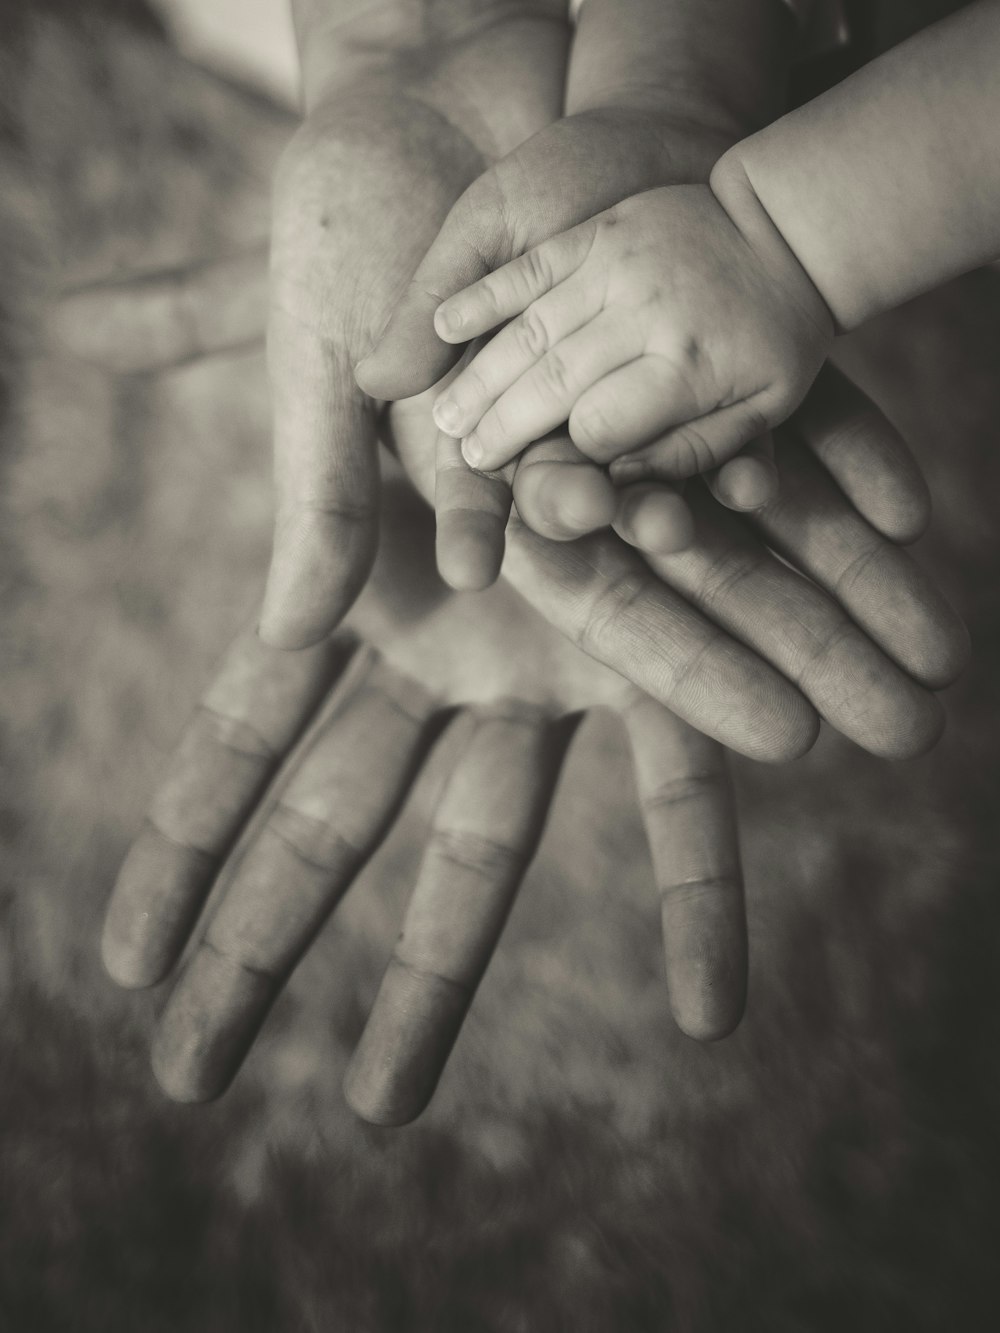 Persona sosteniendo la mano del bebé